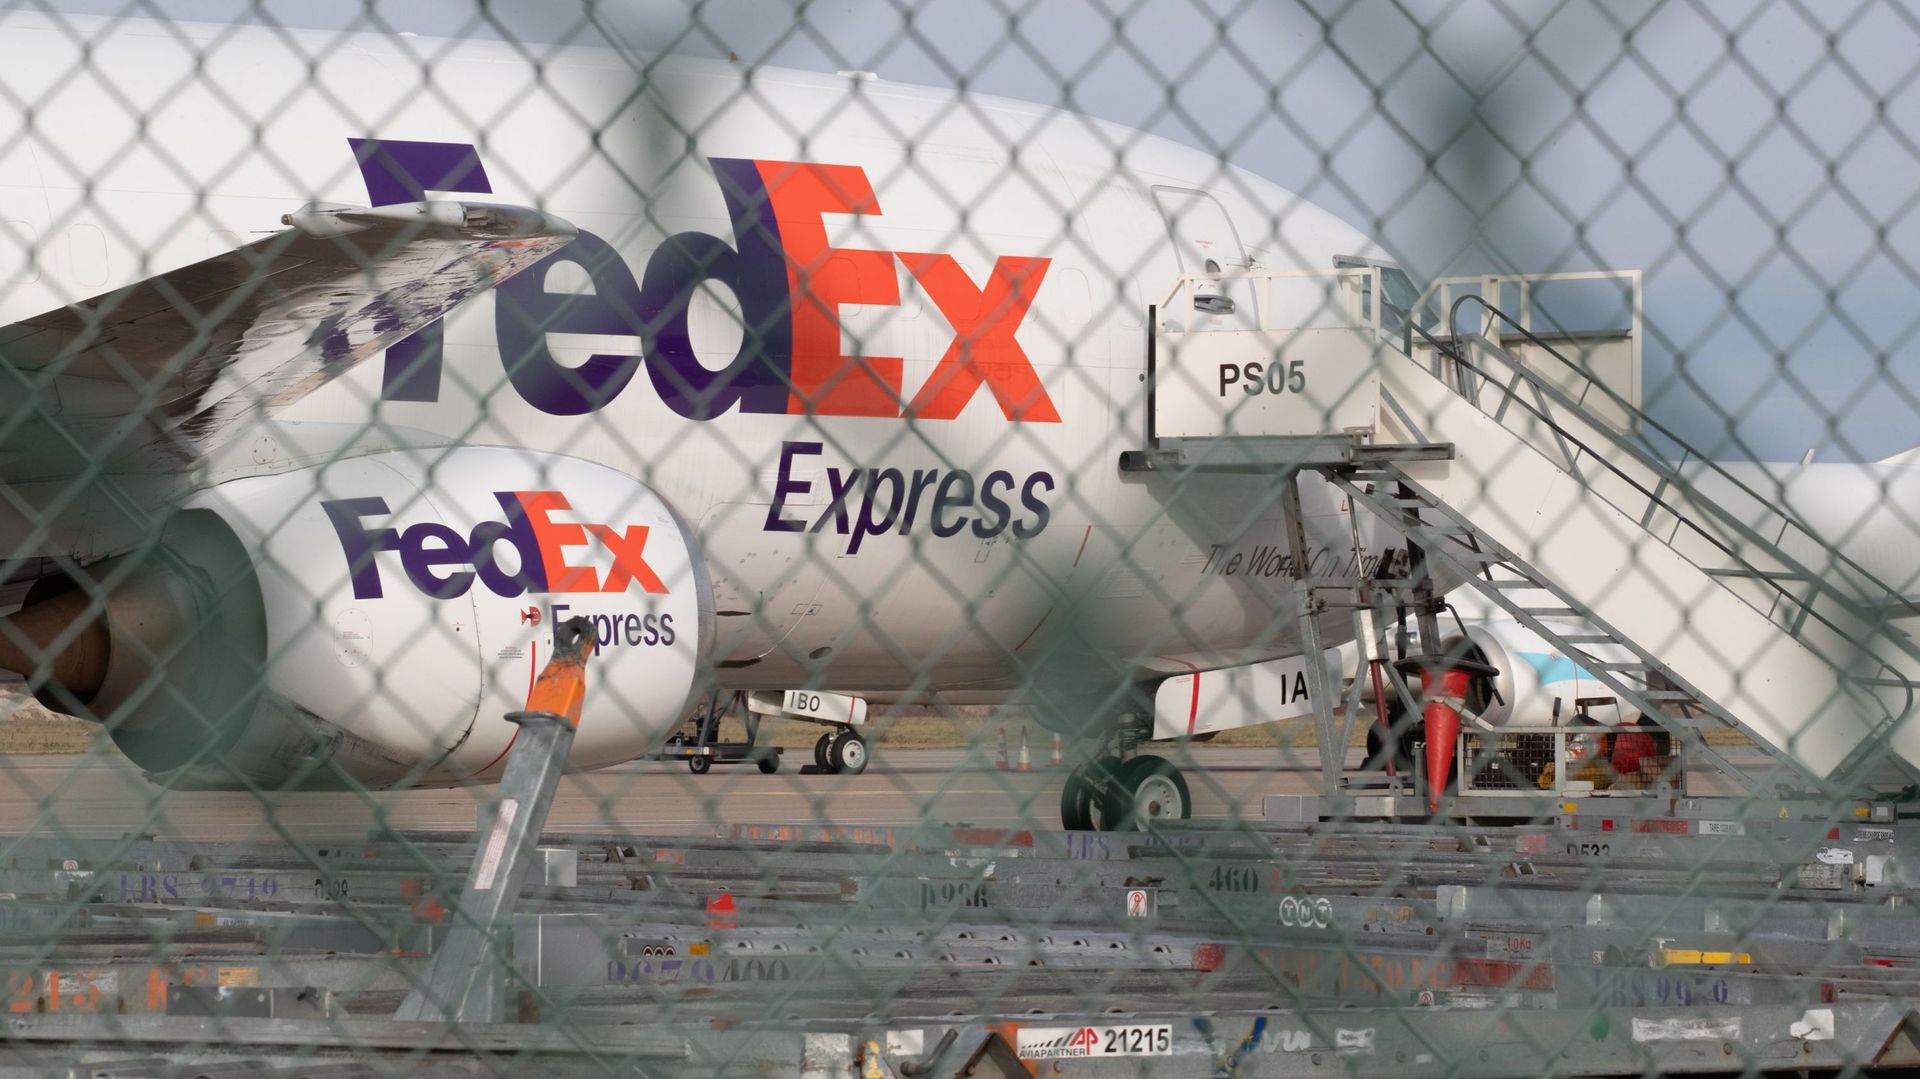 Restructuration Fedex : "La décision de Fedex doit s'accompagner d'une libération des espaces occupés", selon Elio Di Rupo